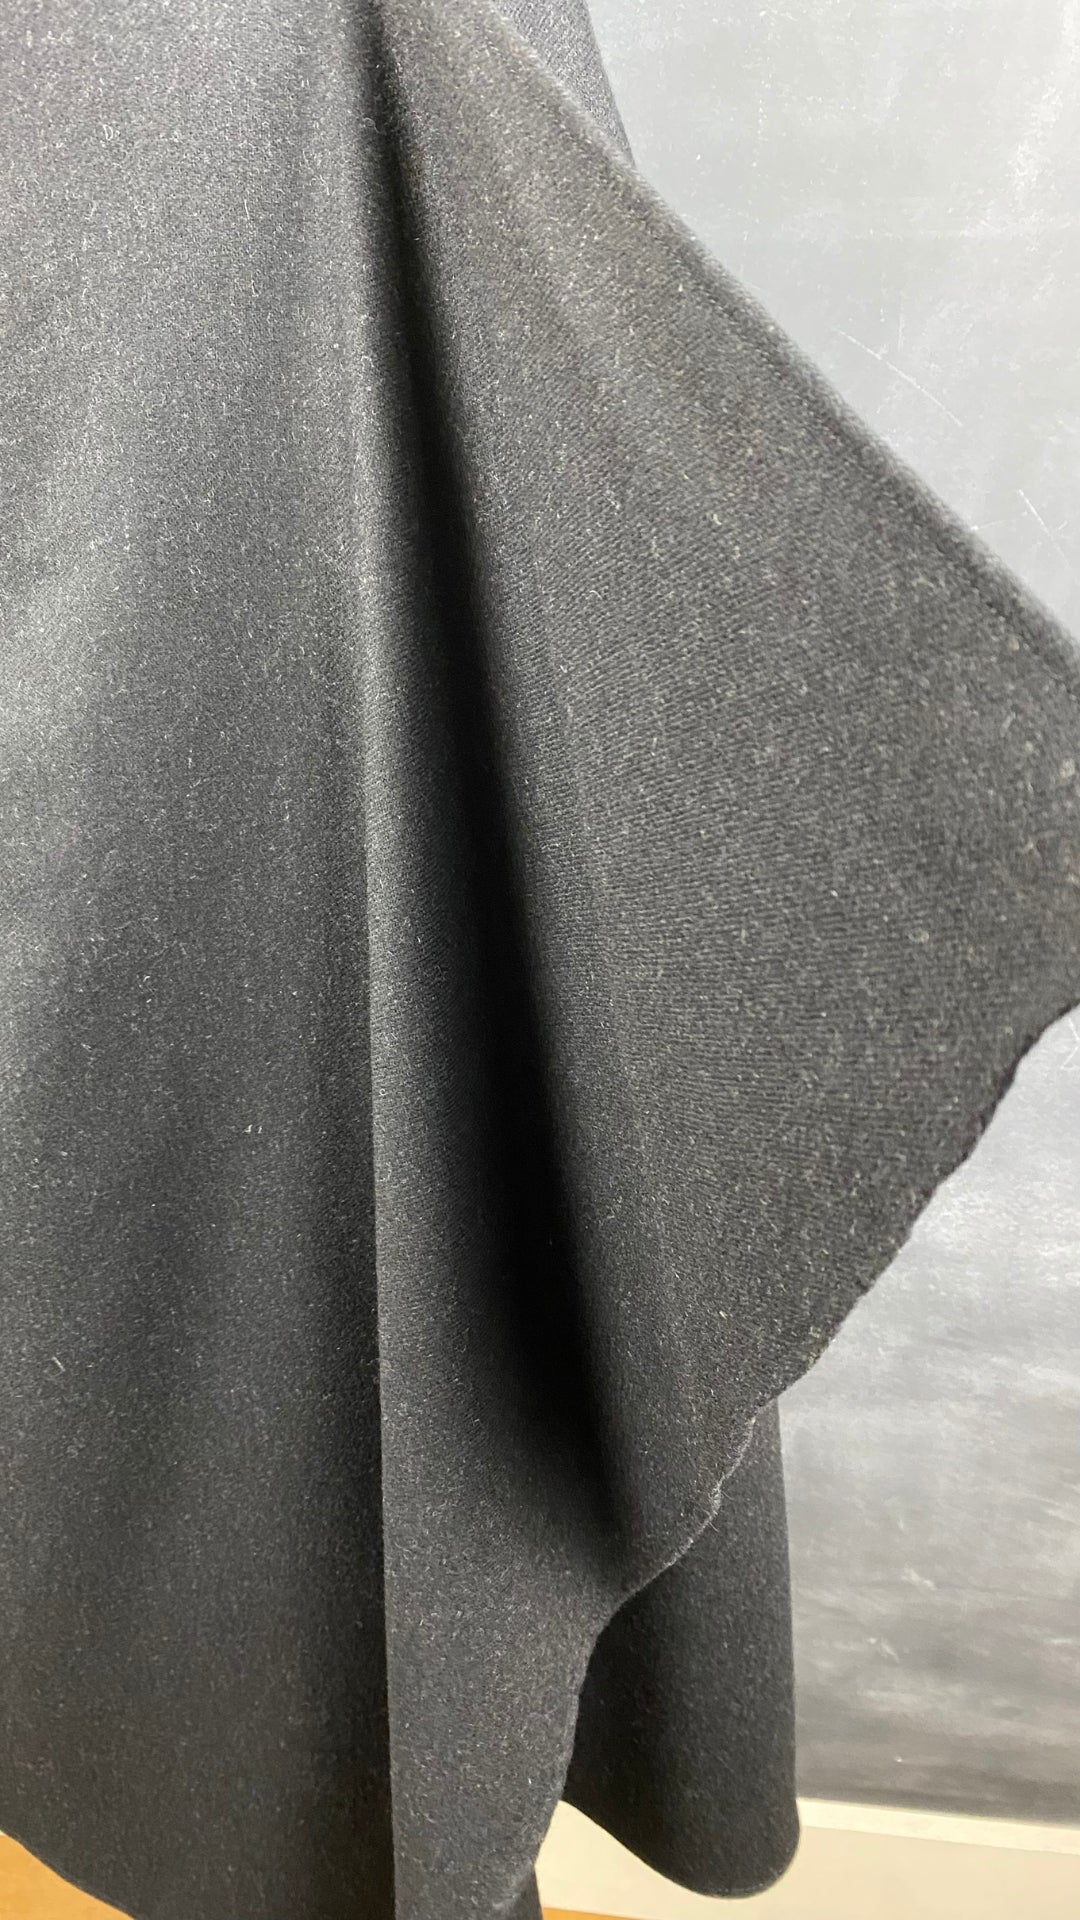 Jupe longue noire chiné en lainage Massimo Dutti, taille small. Vue du détail du panneau asymétrique.